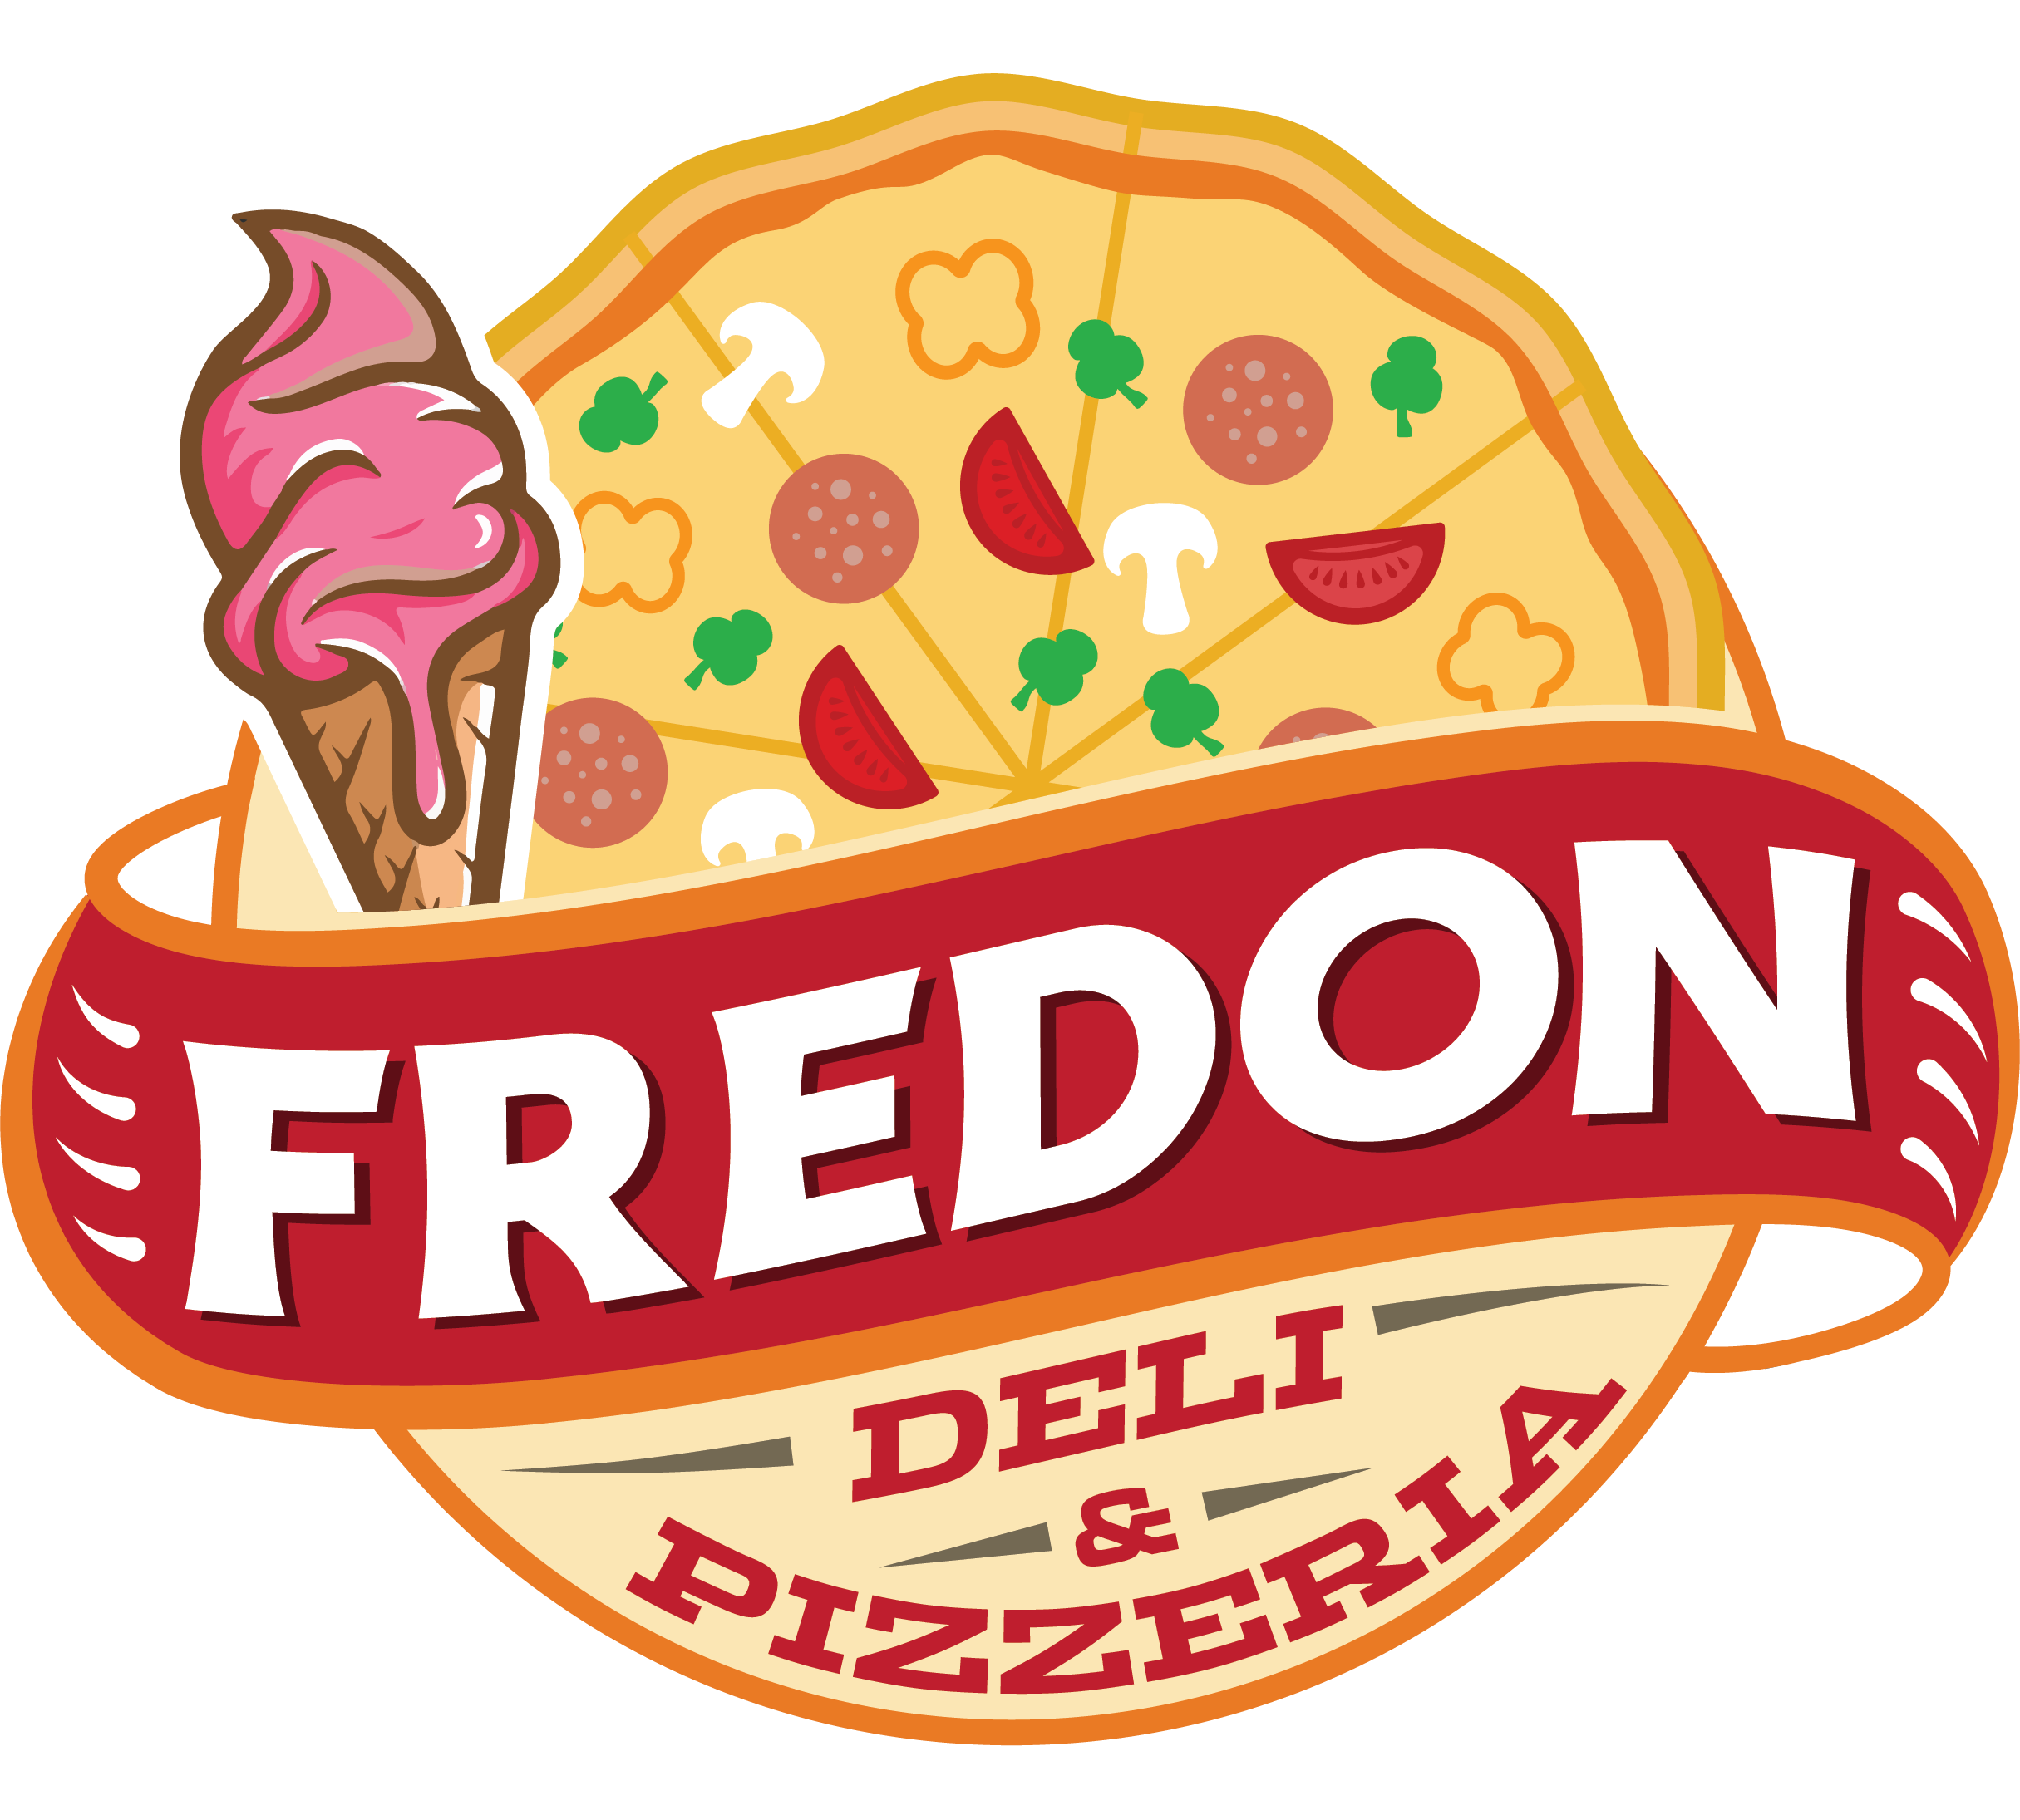 Fredon Deli & Convenience Home